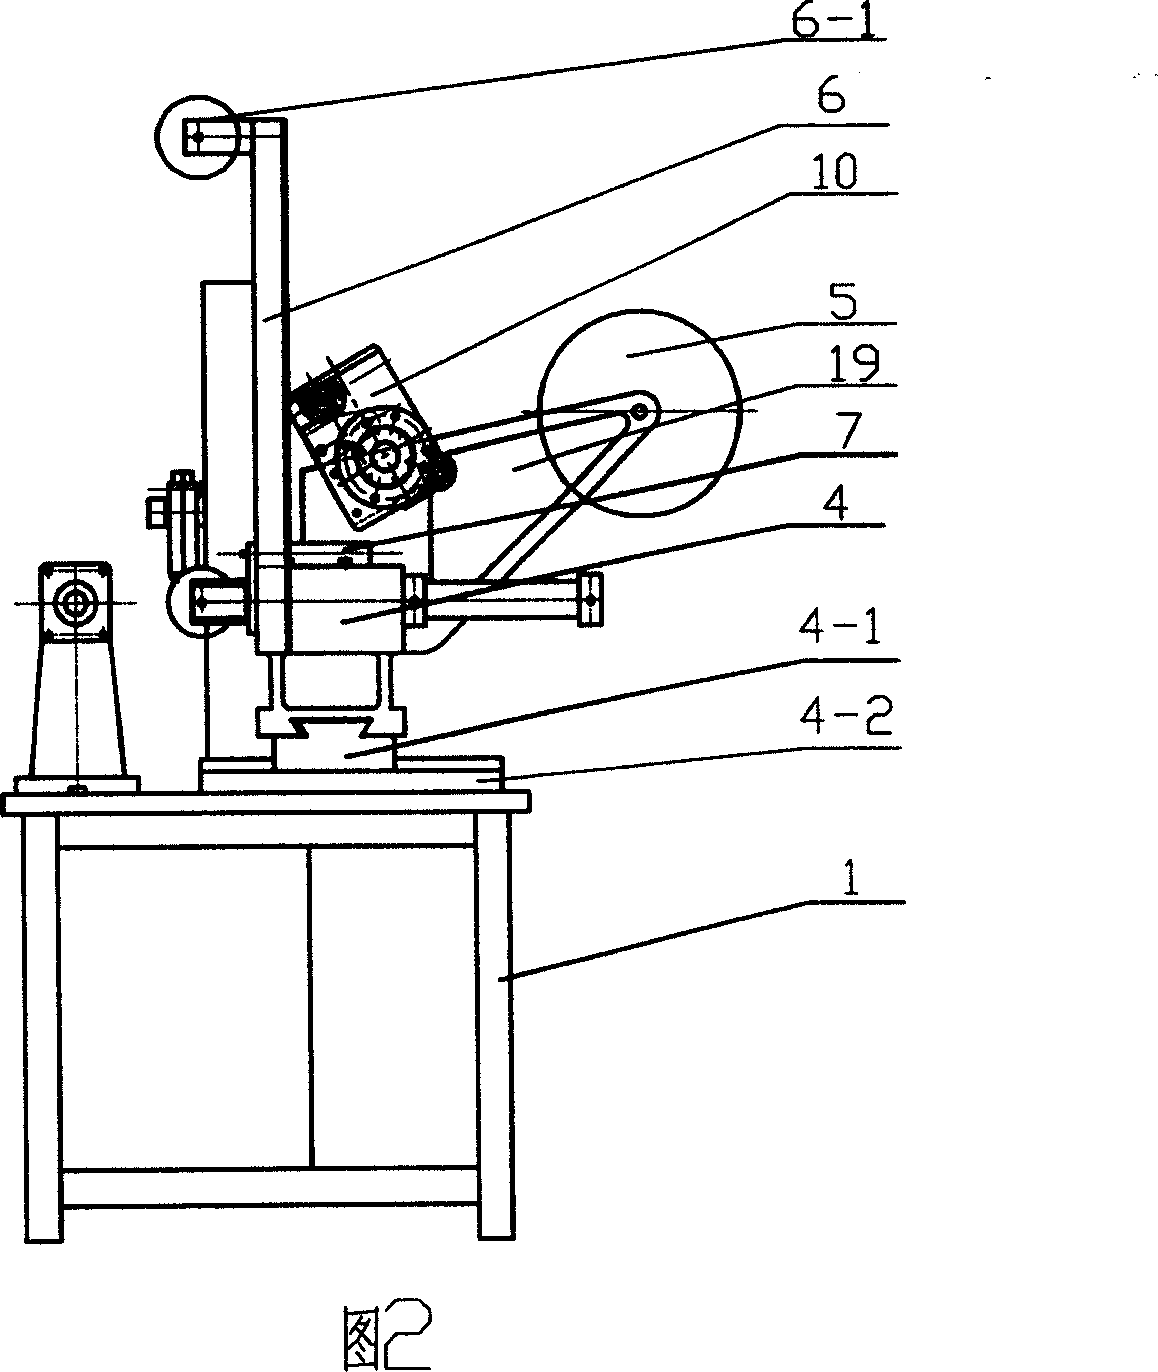 Semi-automatic pad winding machine